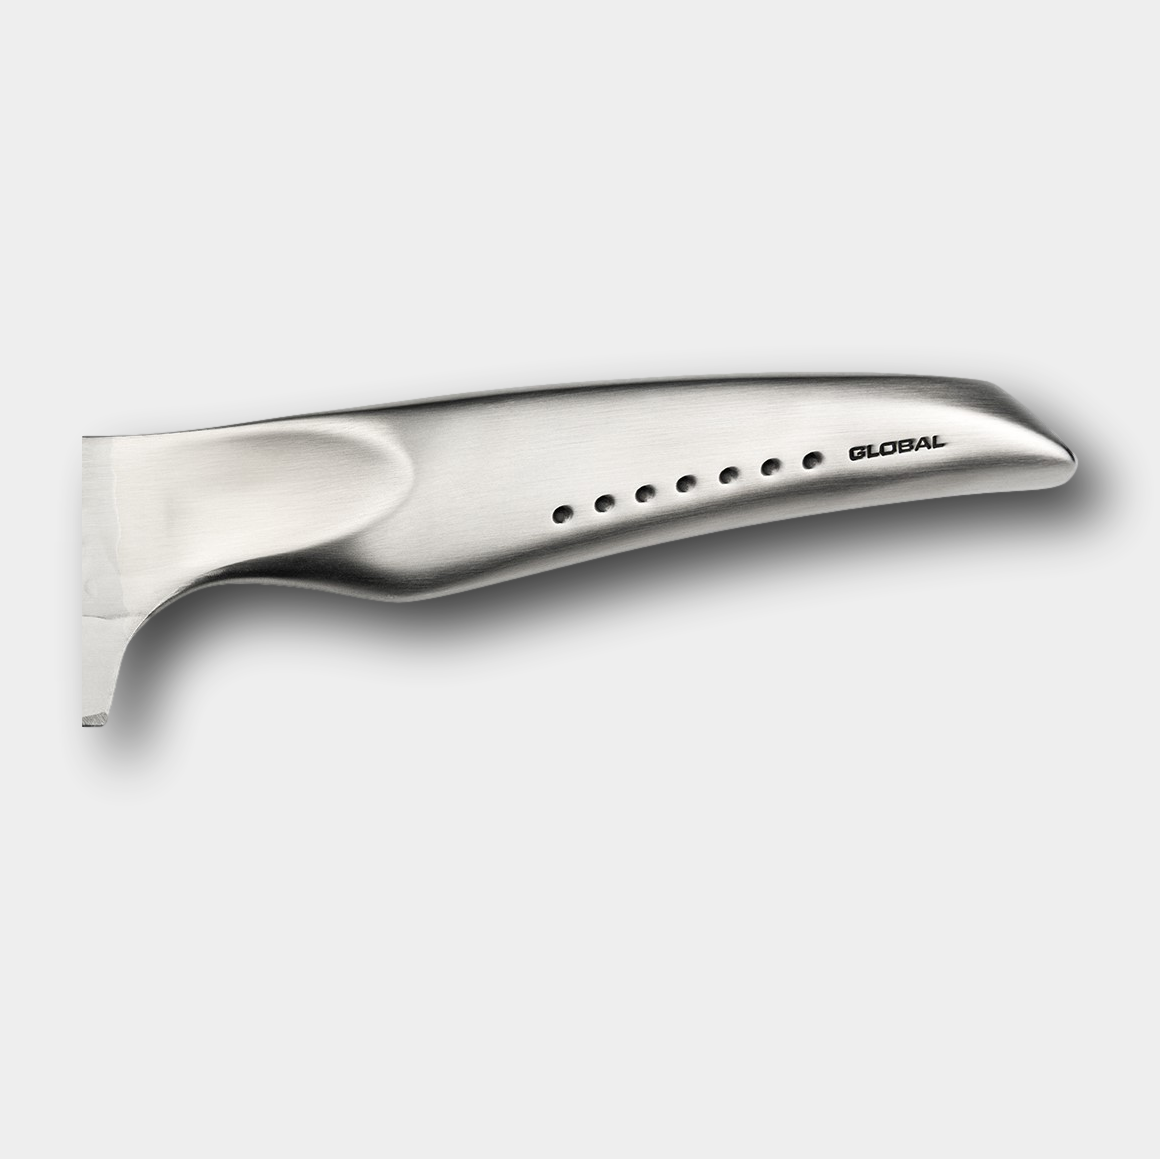 Global Sai Bread Knife 17cm